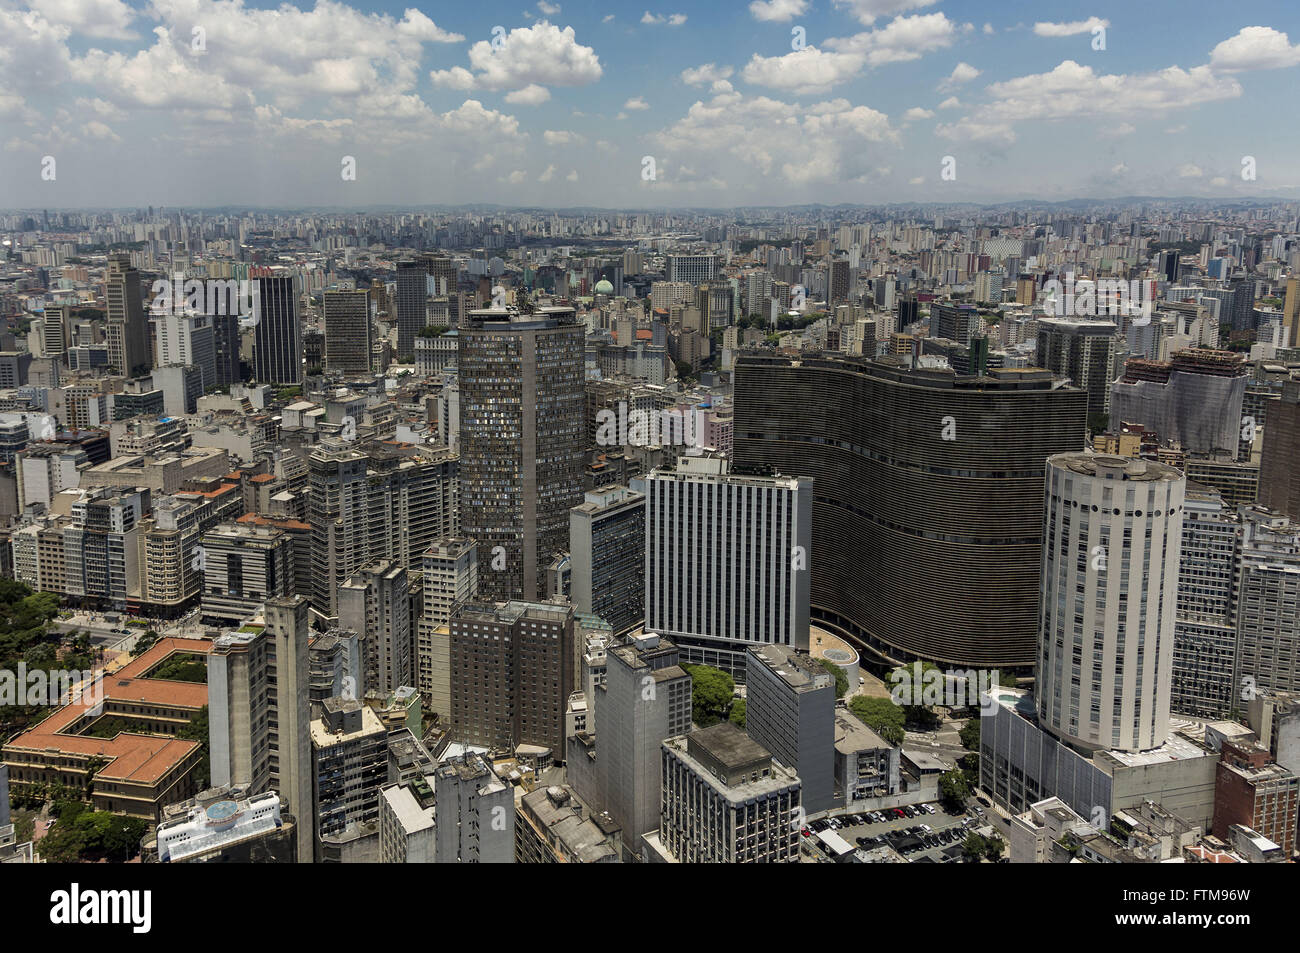 Aerial view of the central region of the city of Sao Paulo - Edificio Copan and Edificio Italia Stock Photo